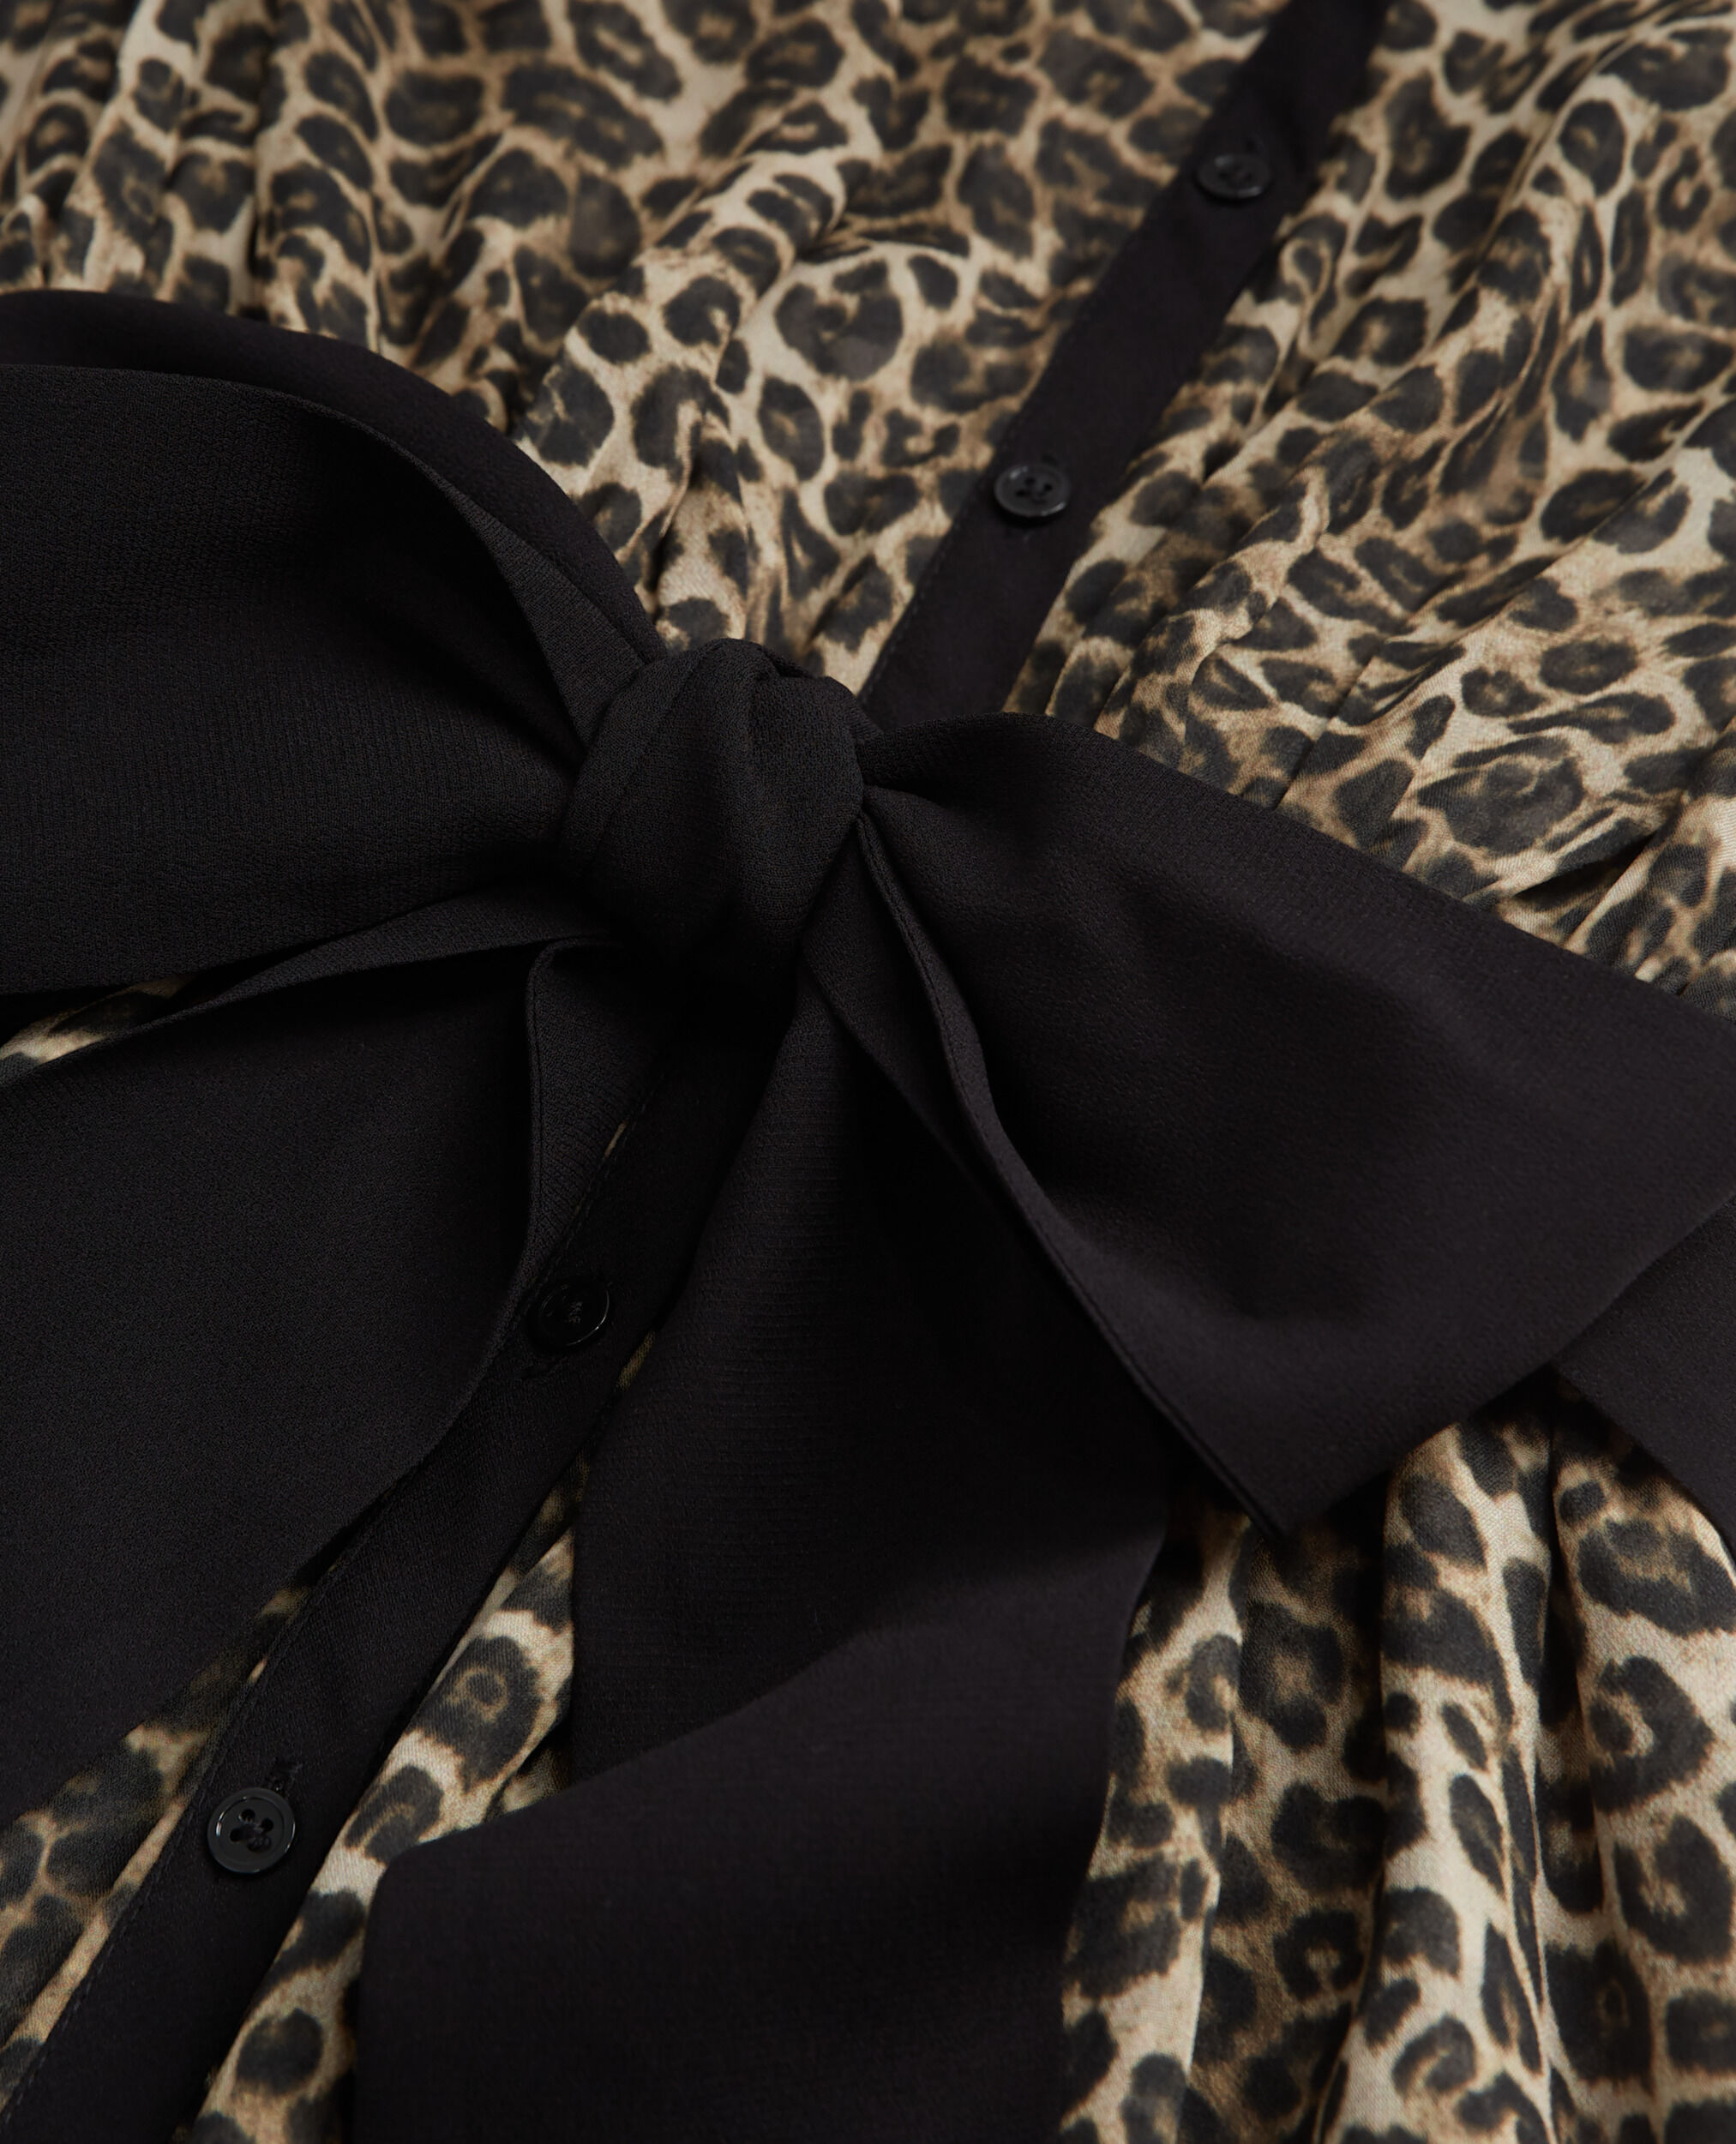 Long leopard print dress, LEOPARD, hi-res image number null